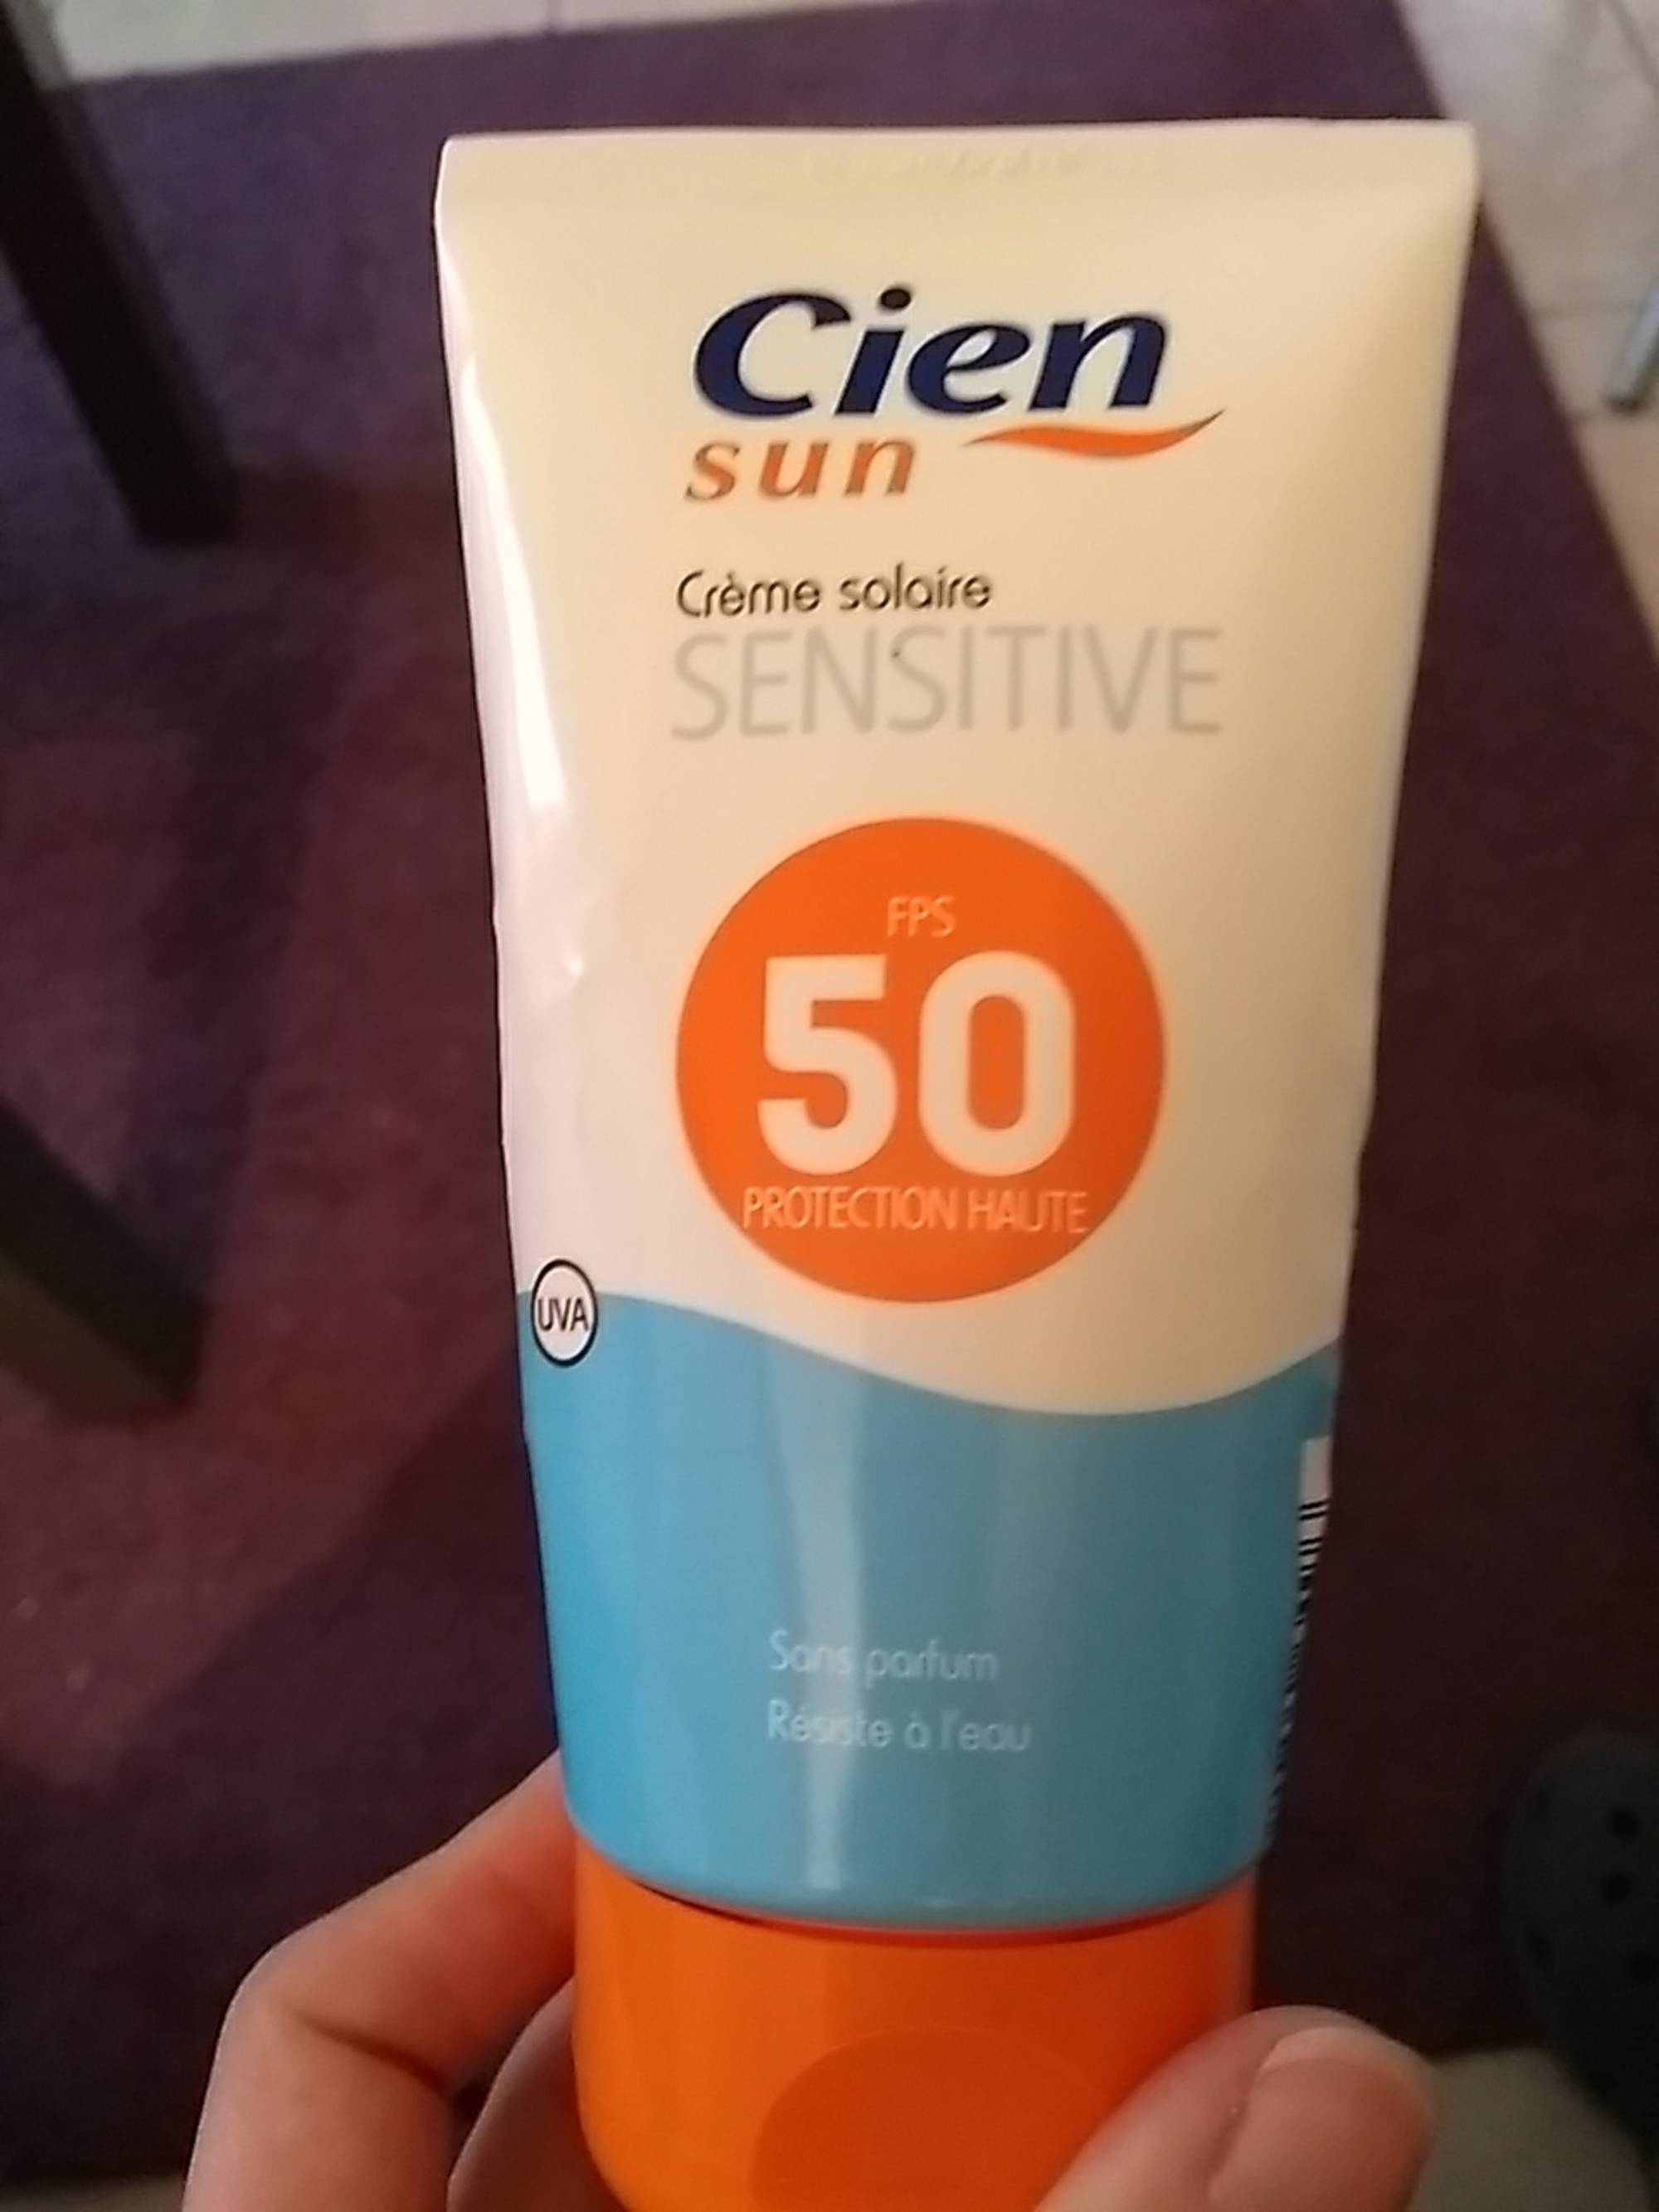 CIEN SUN - Crème solaire sensitive FPS 50